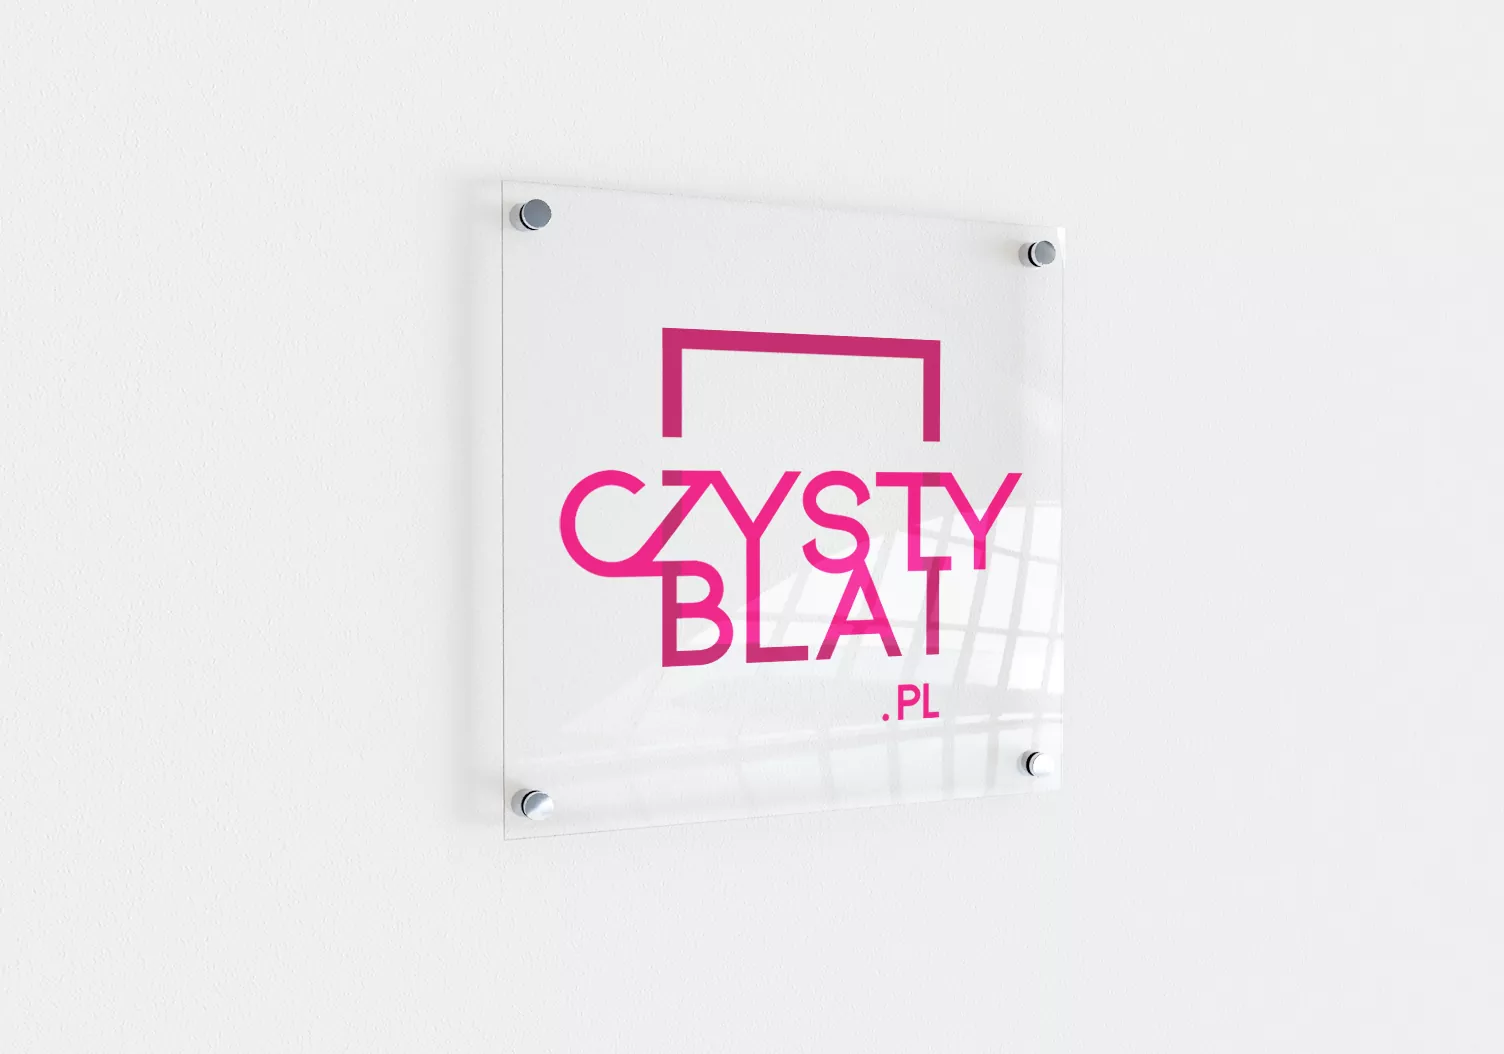 Czystyblat.pl - identyfikacja wizualna, projekt i wizualizacja logo na tabliczce przyściennej